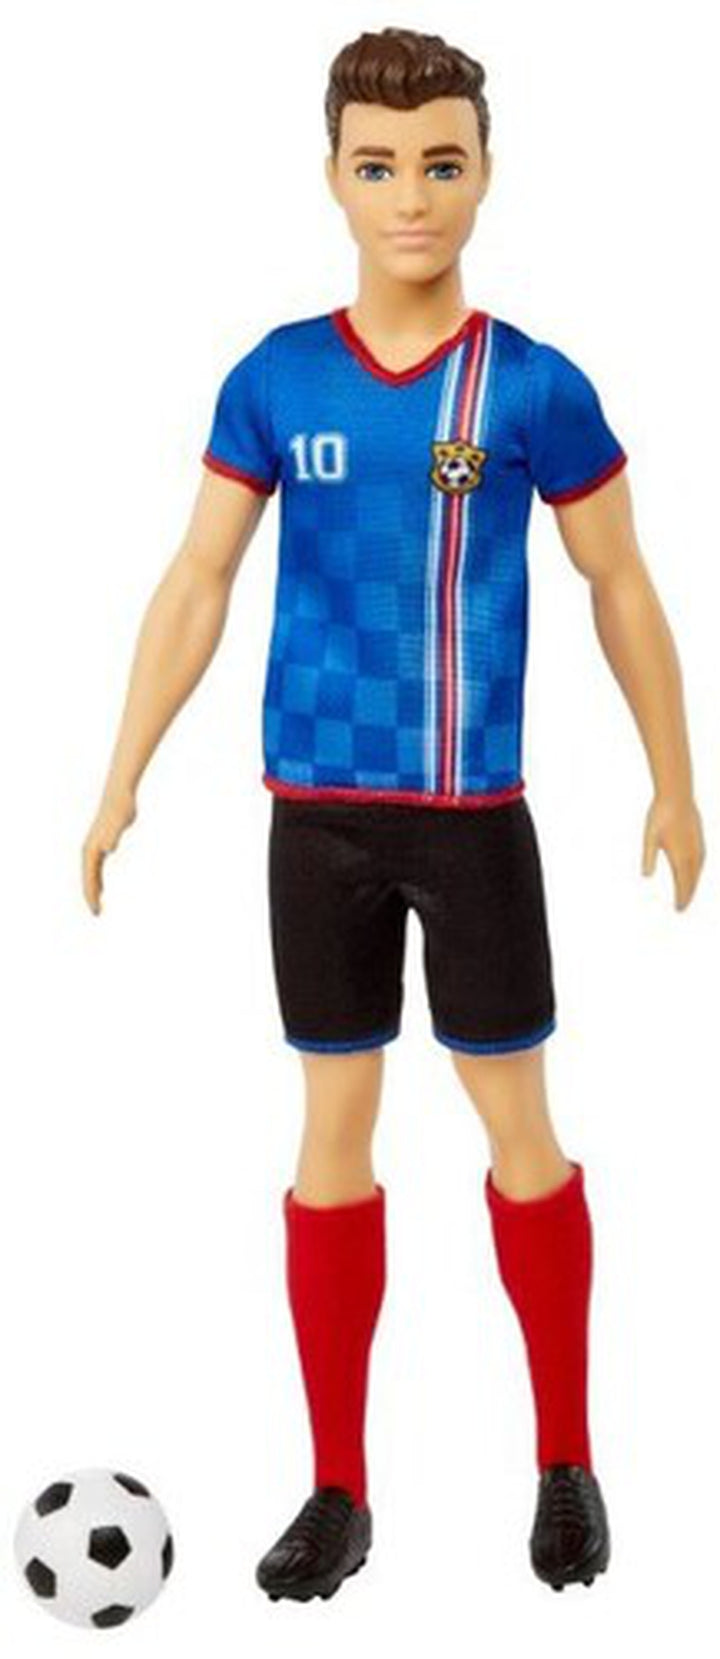 Mattel - Barbie I Can Be Soccer Player Ken, Brunette, Blue & Red Uniform